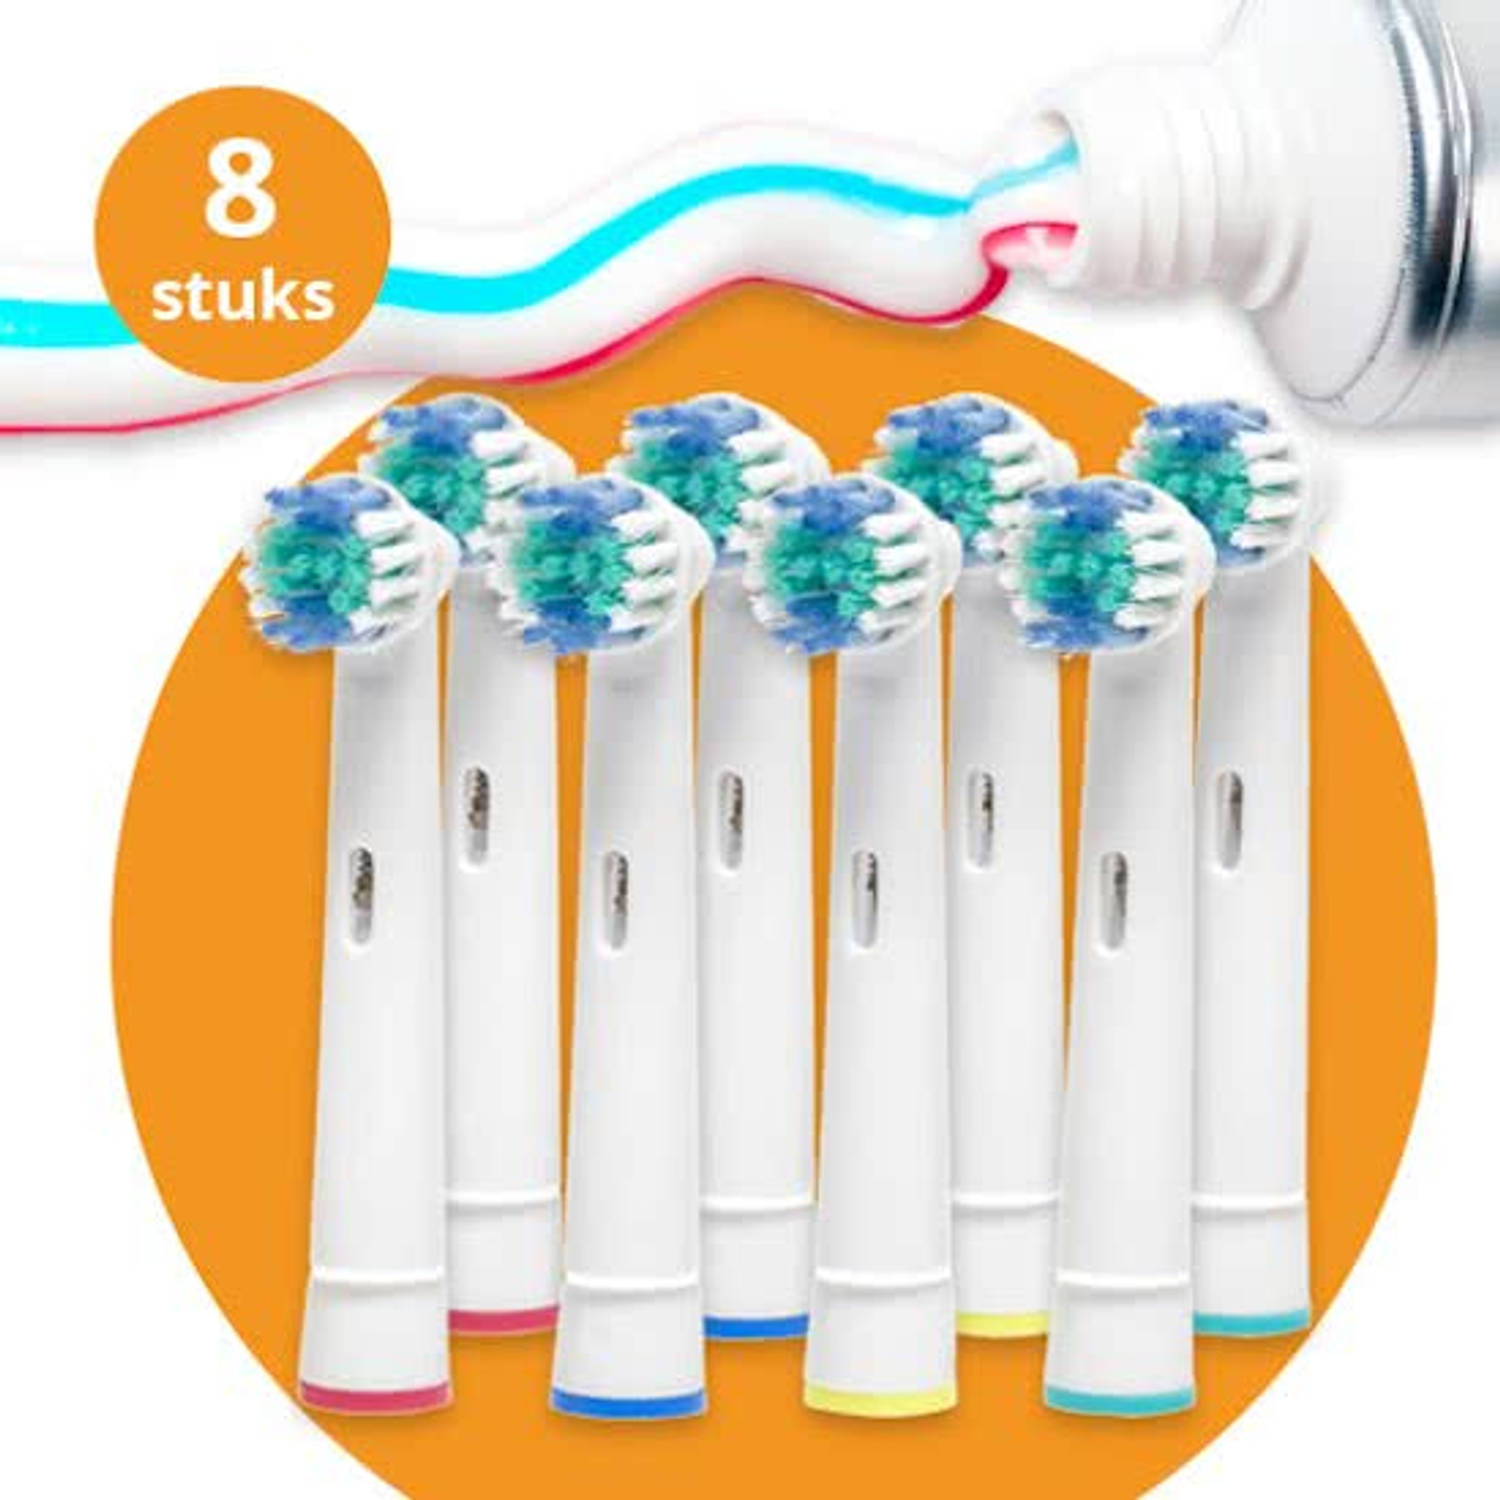 Darmen Overdreven Monarchie Opzetborstels - 8 stuks - geschikt voor oral-b / braun / philips  tandenborstels-flexisoft | Blokker